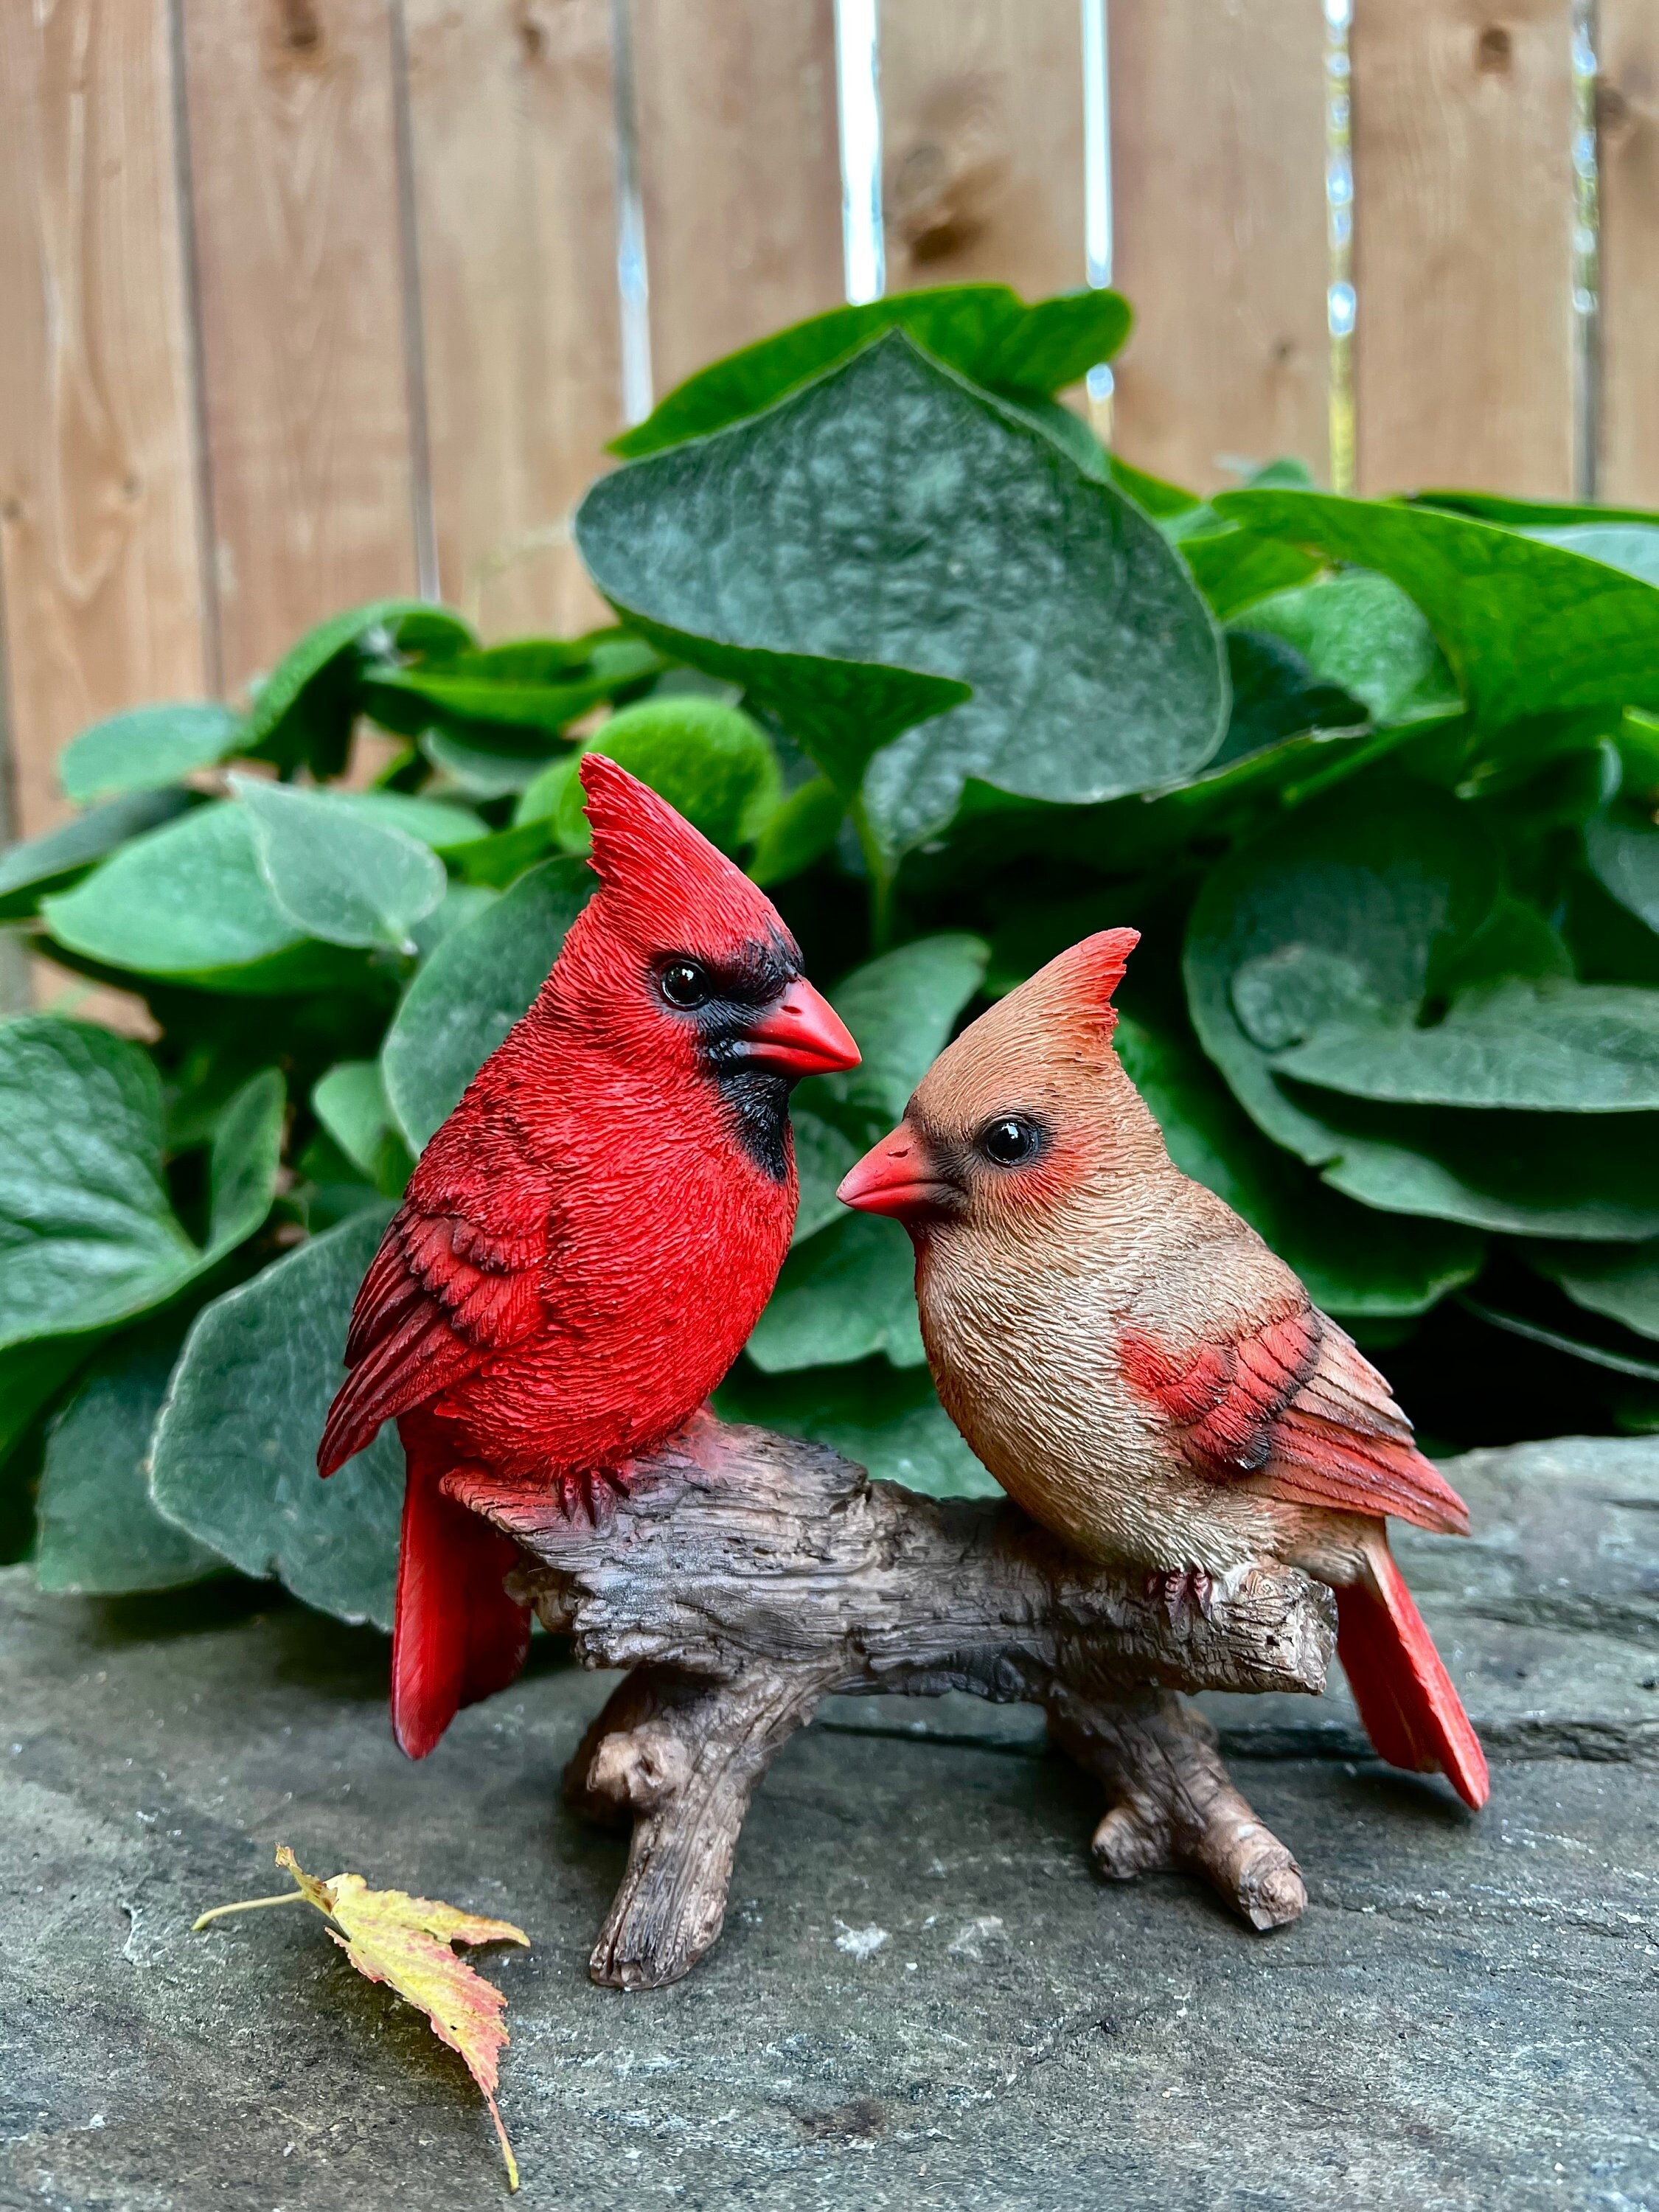 Cardinal Wood Carving Statue Garden Handmade Animal Sculpture Decor Art  Ornament